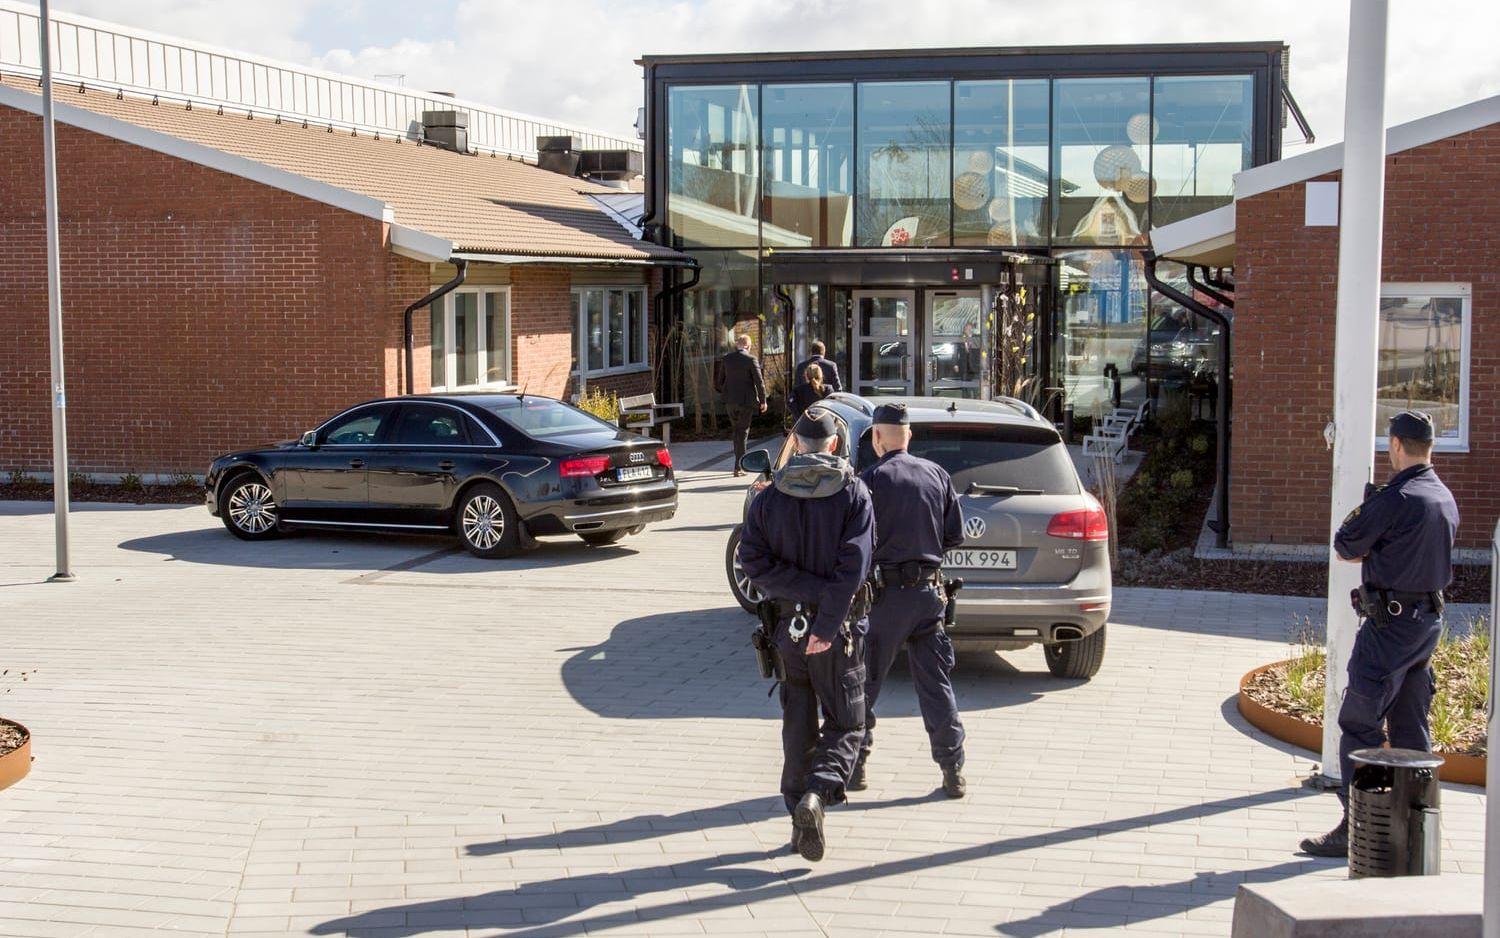 Statsministern anlände till Campus Laholm i en mörk bil i sällskap av sina närmaste medarbetare och livvakter från säkerhetspolisen. Flera poliser bevakade byggnaden. Bild: Jonatan Gernes